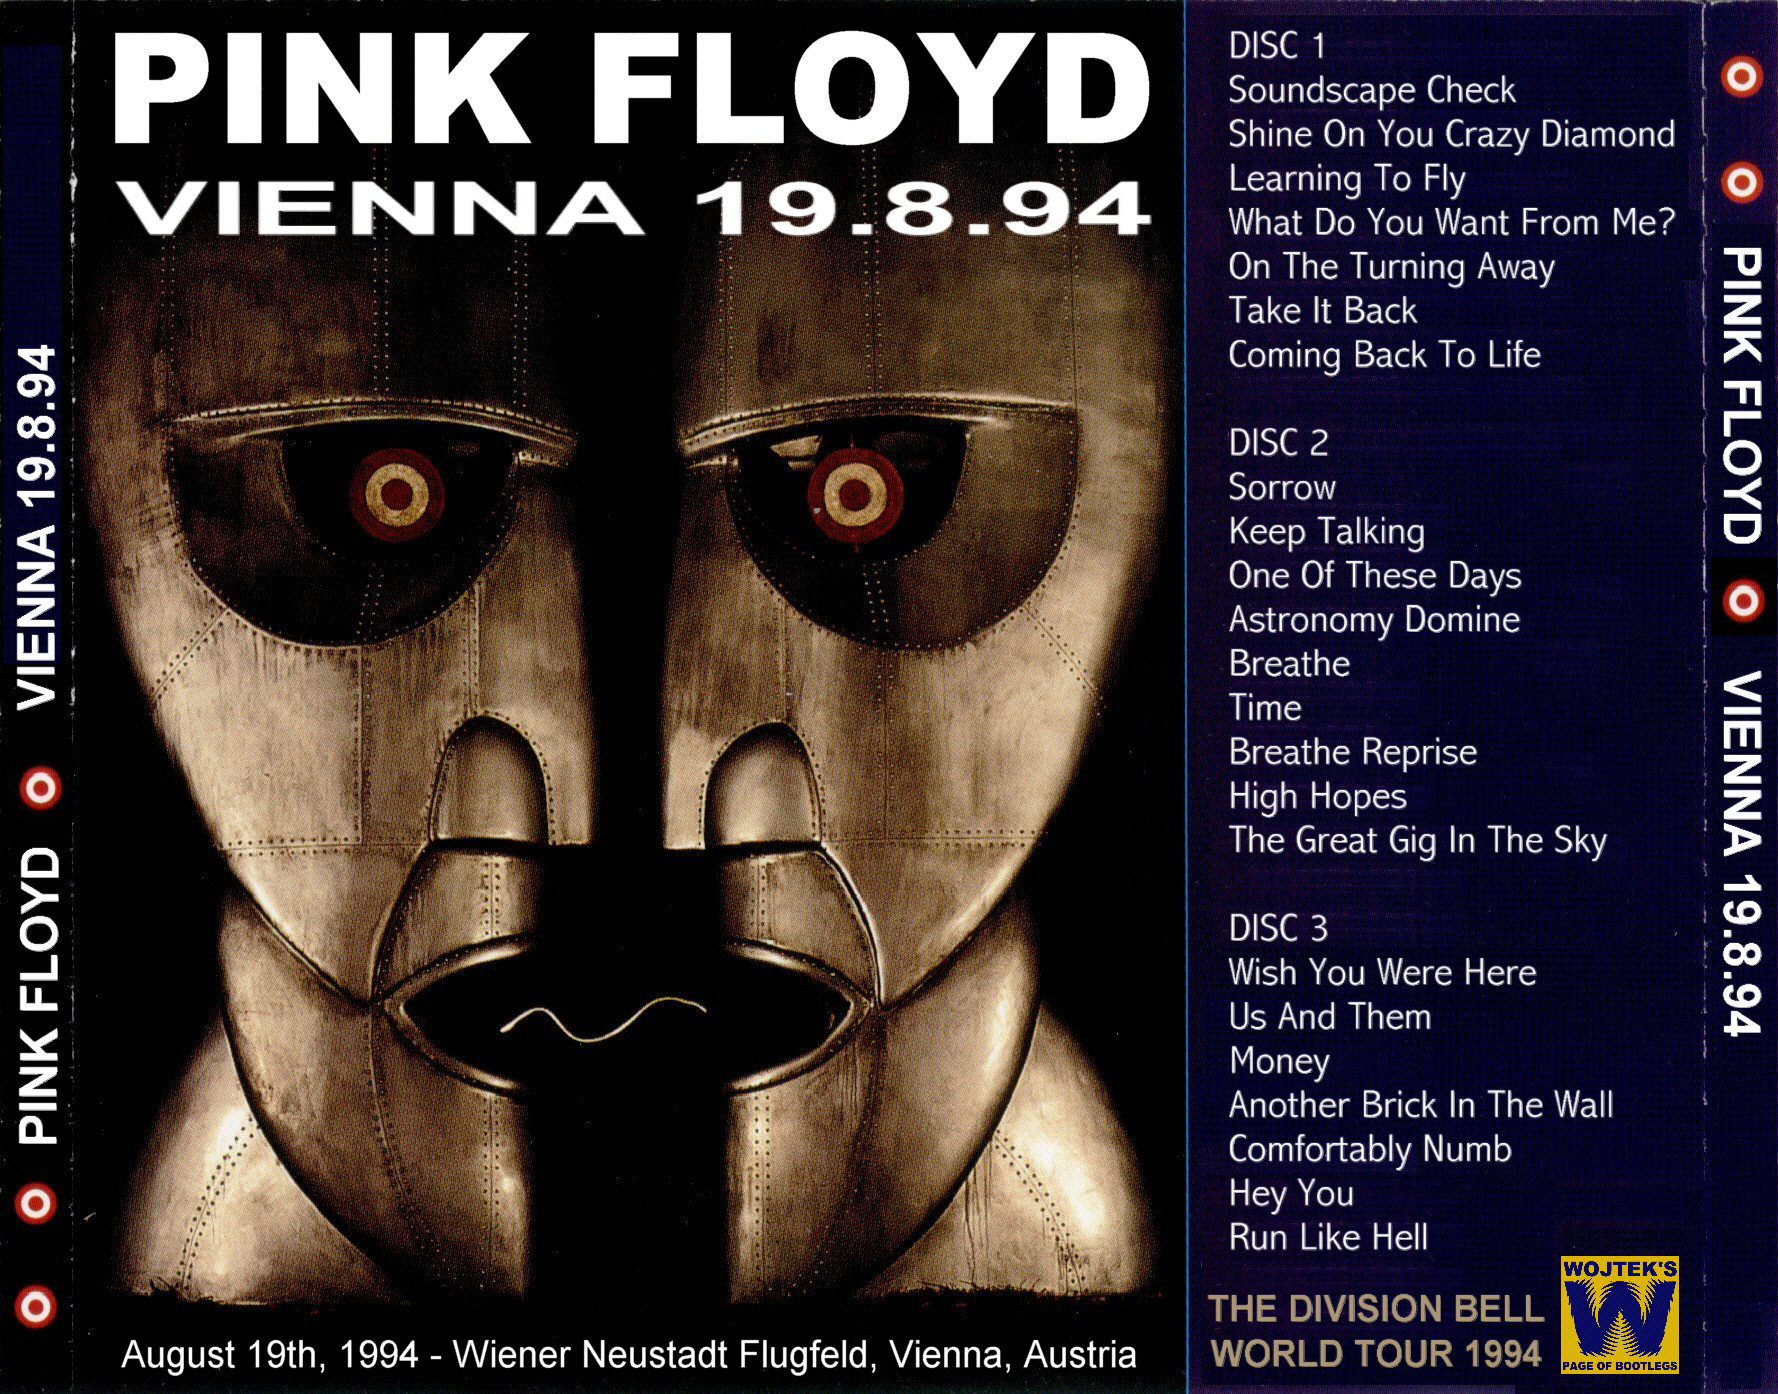 PinkFloyd1994-09-18WienerNeustadtFlugfeldViennaAustria (2).JPG